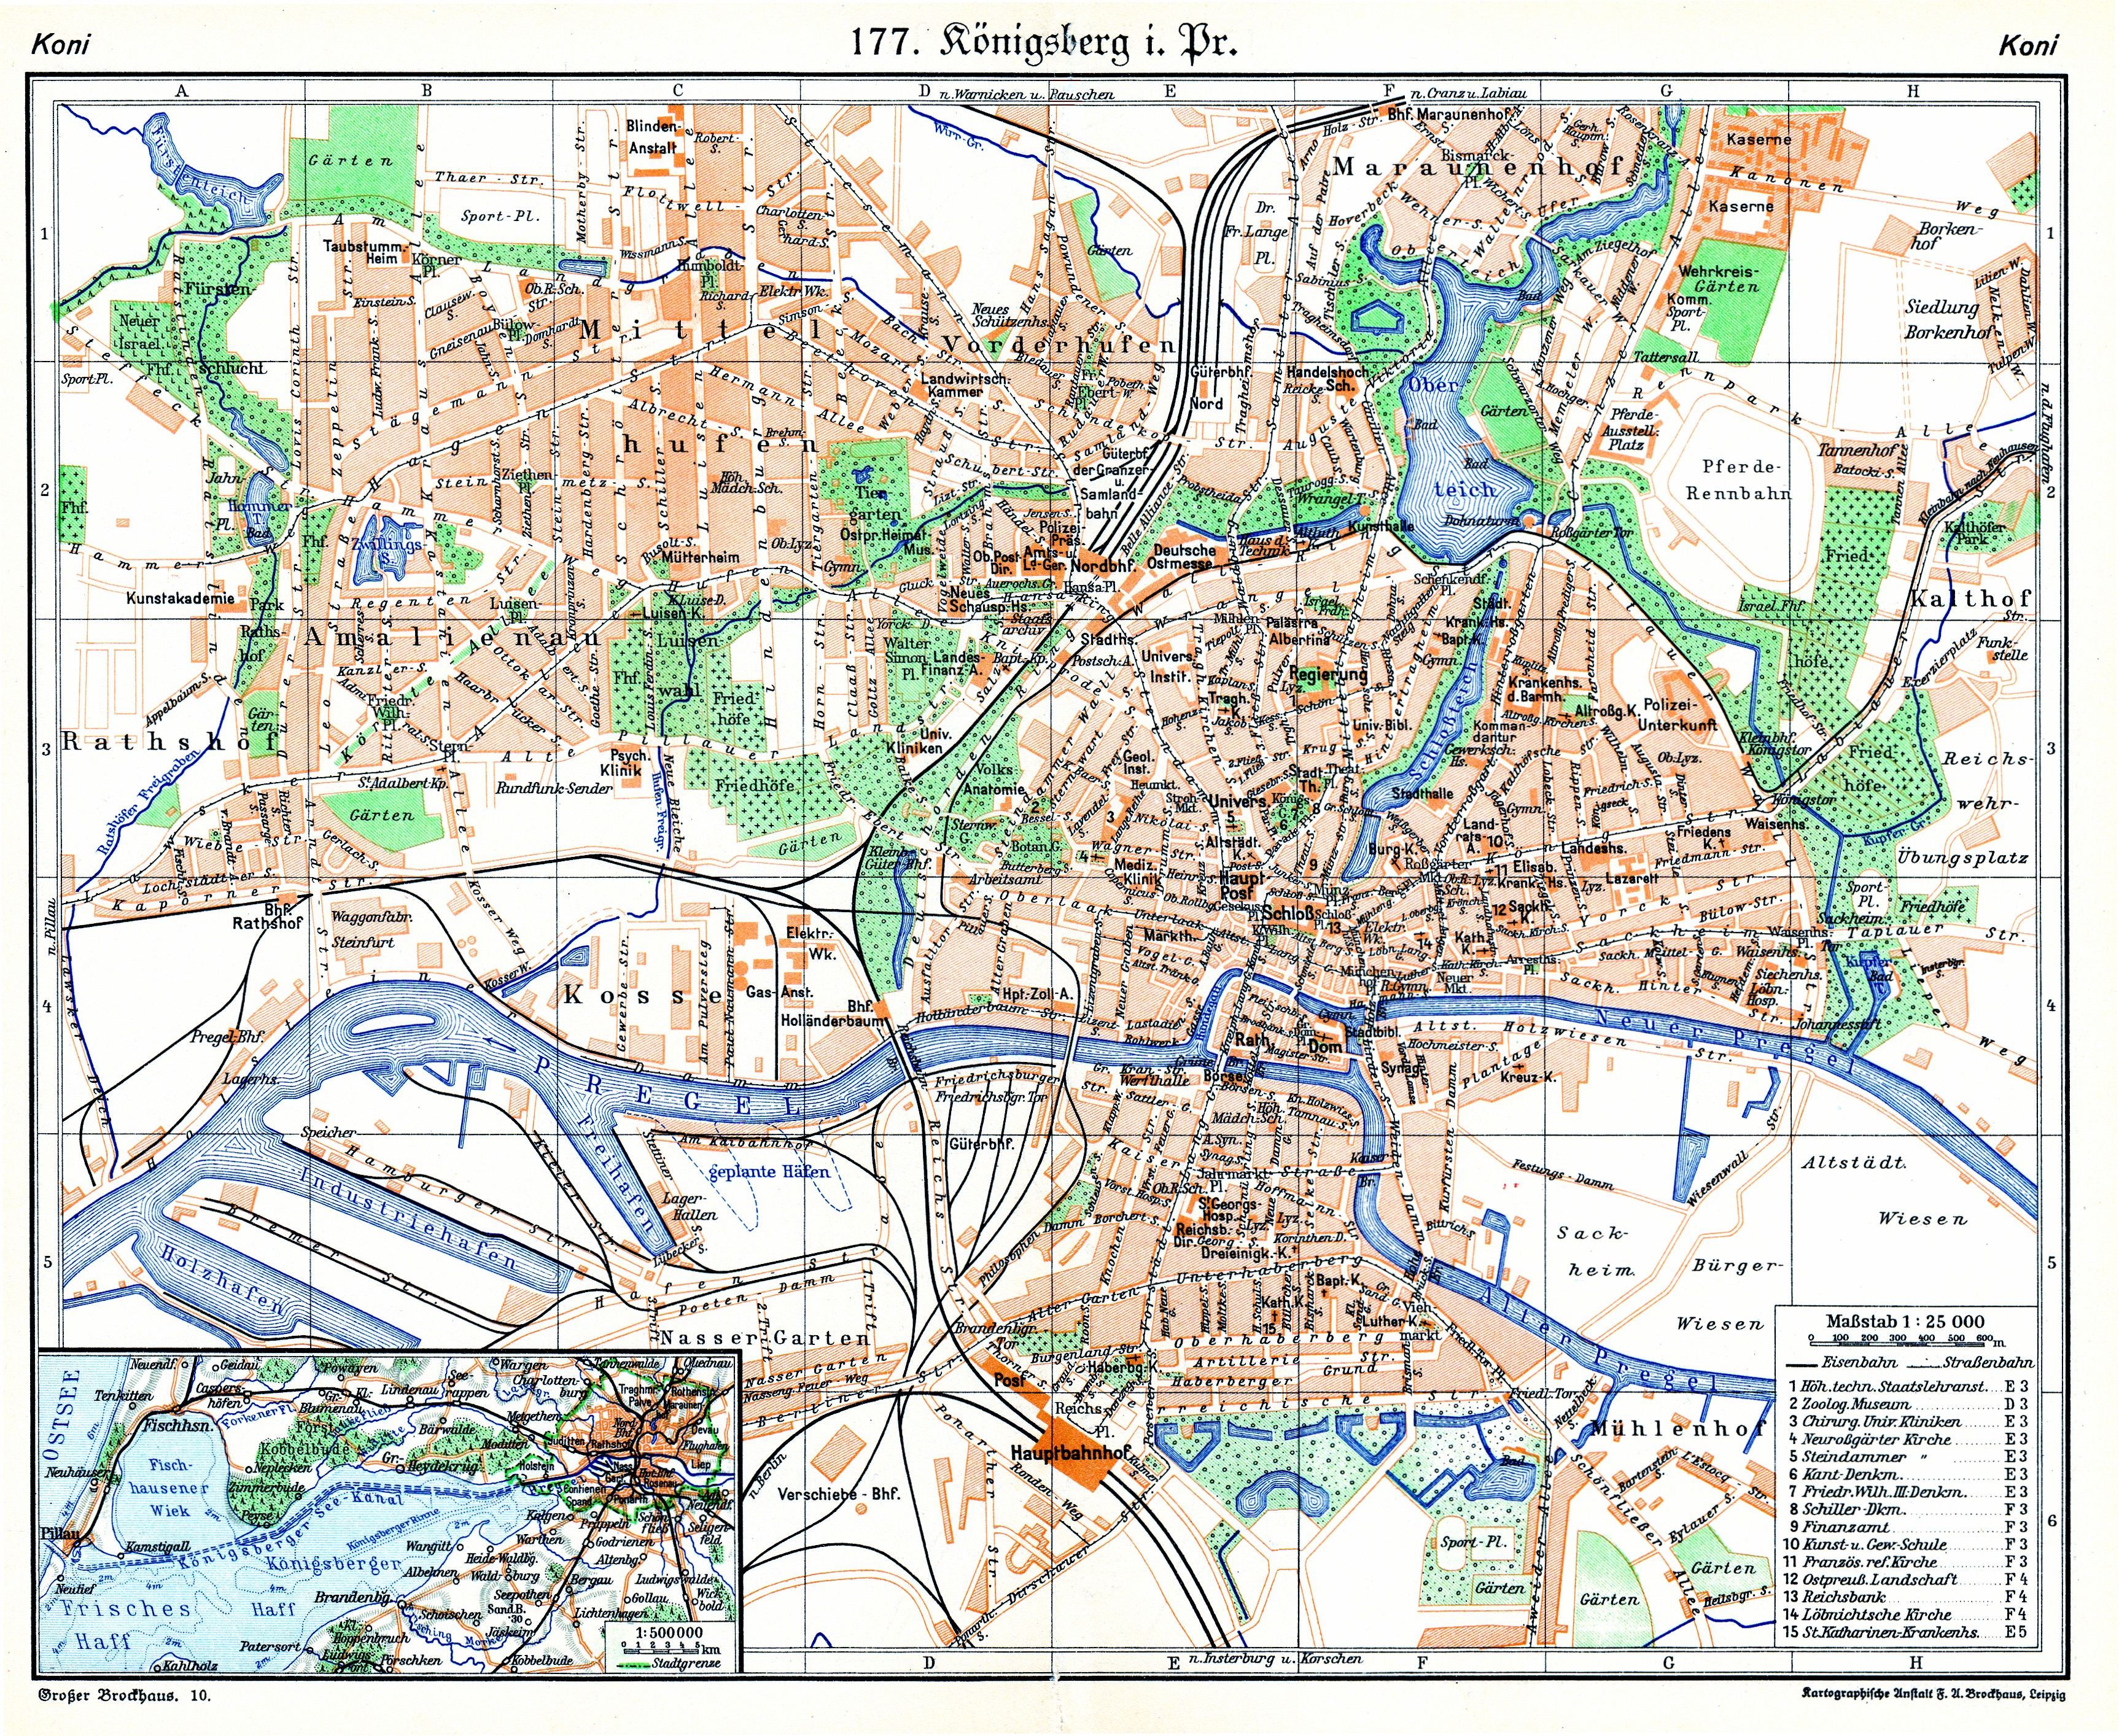 калининград достопримечательности на карте с описанием